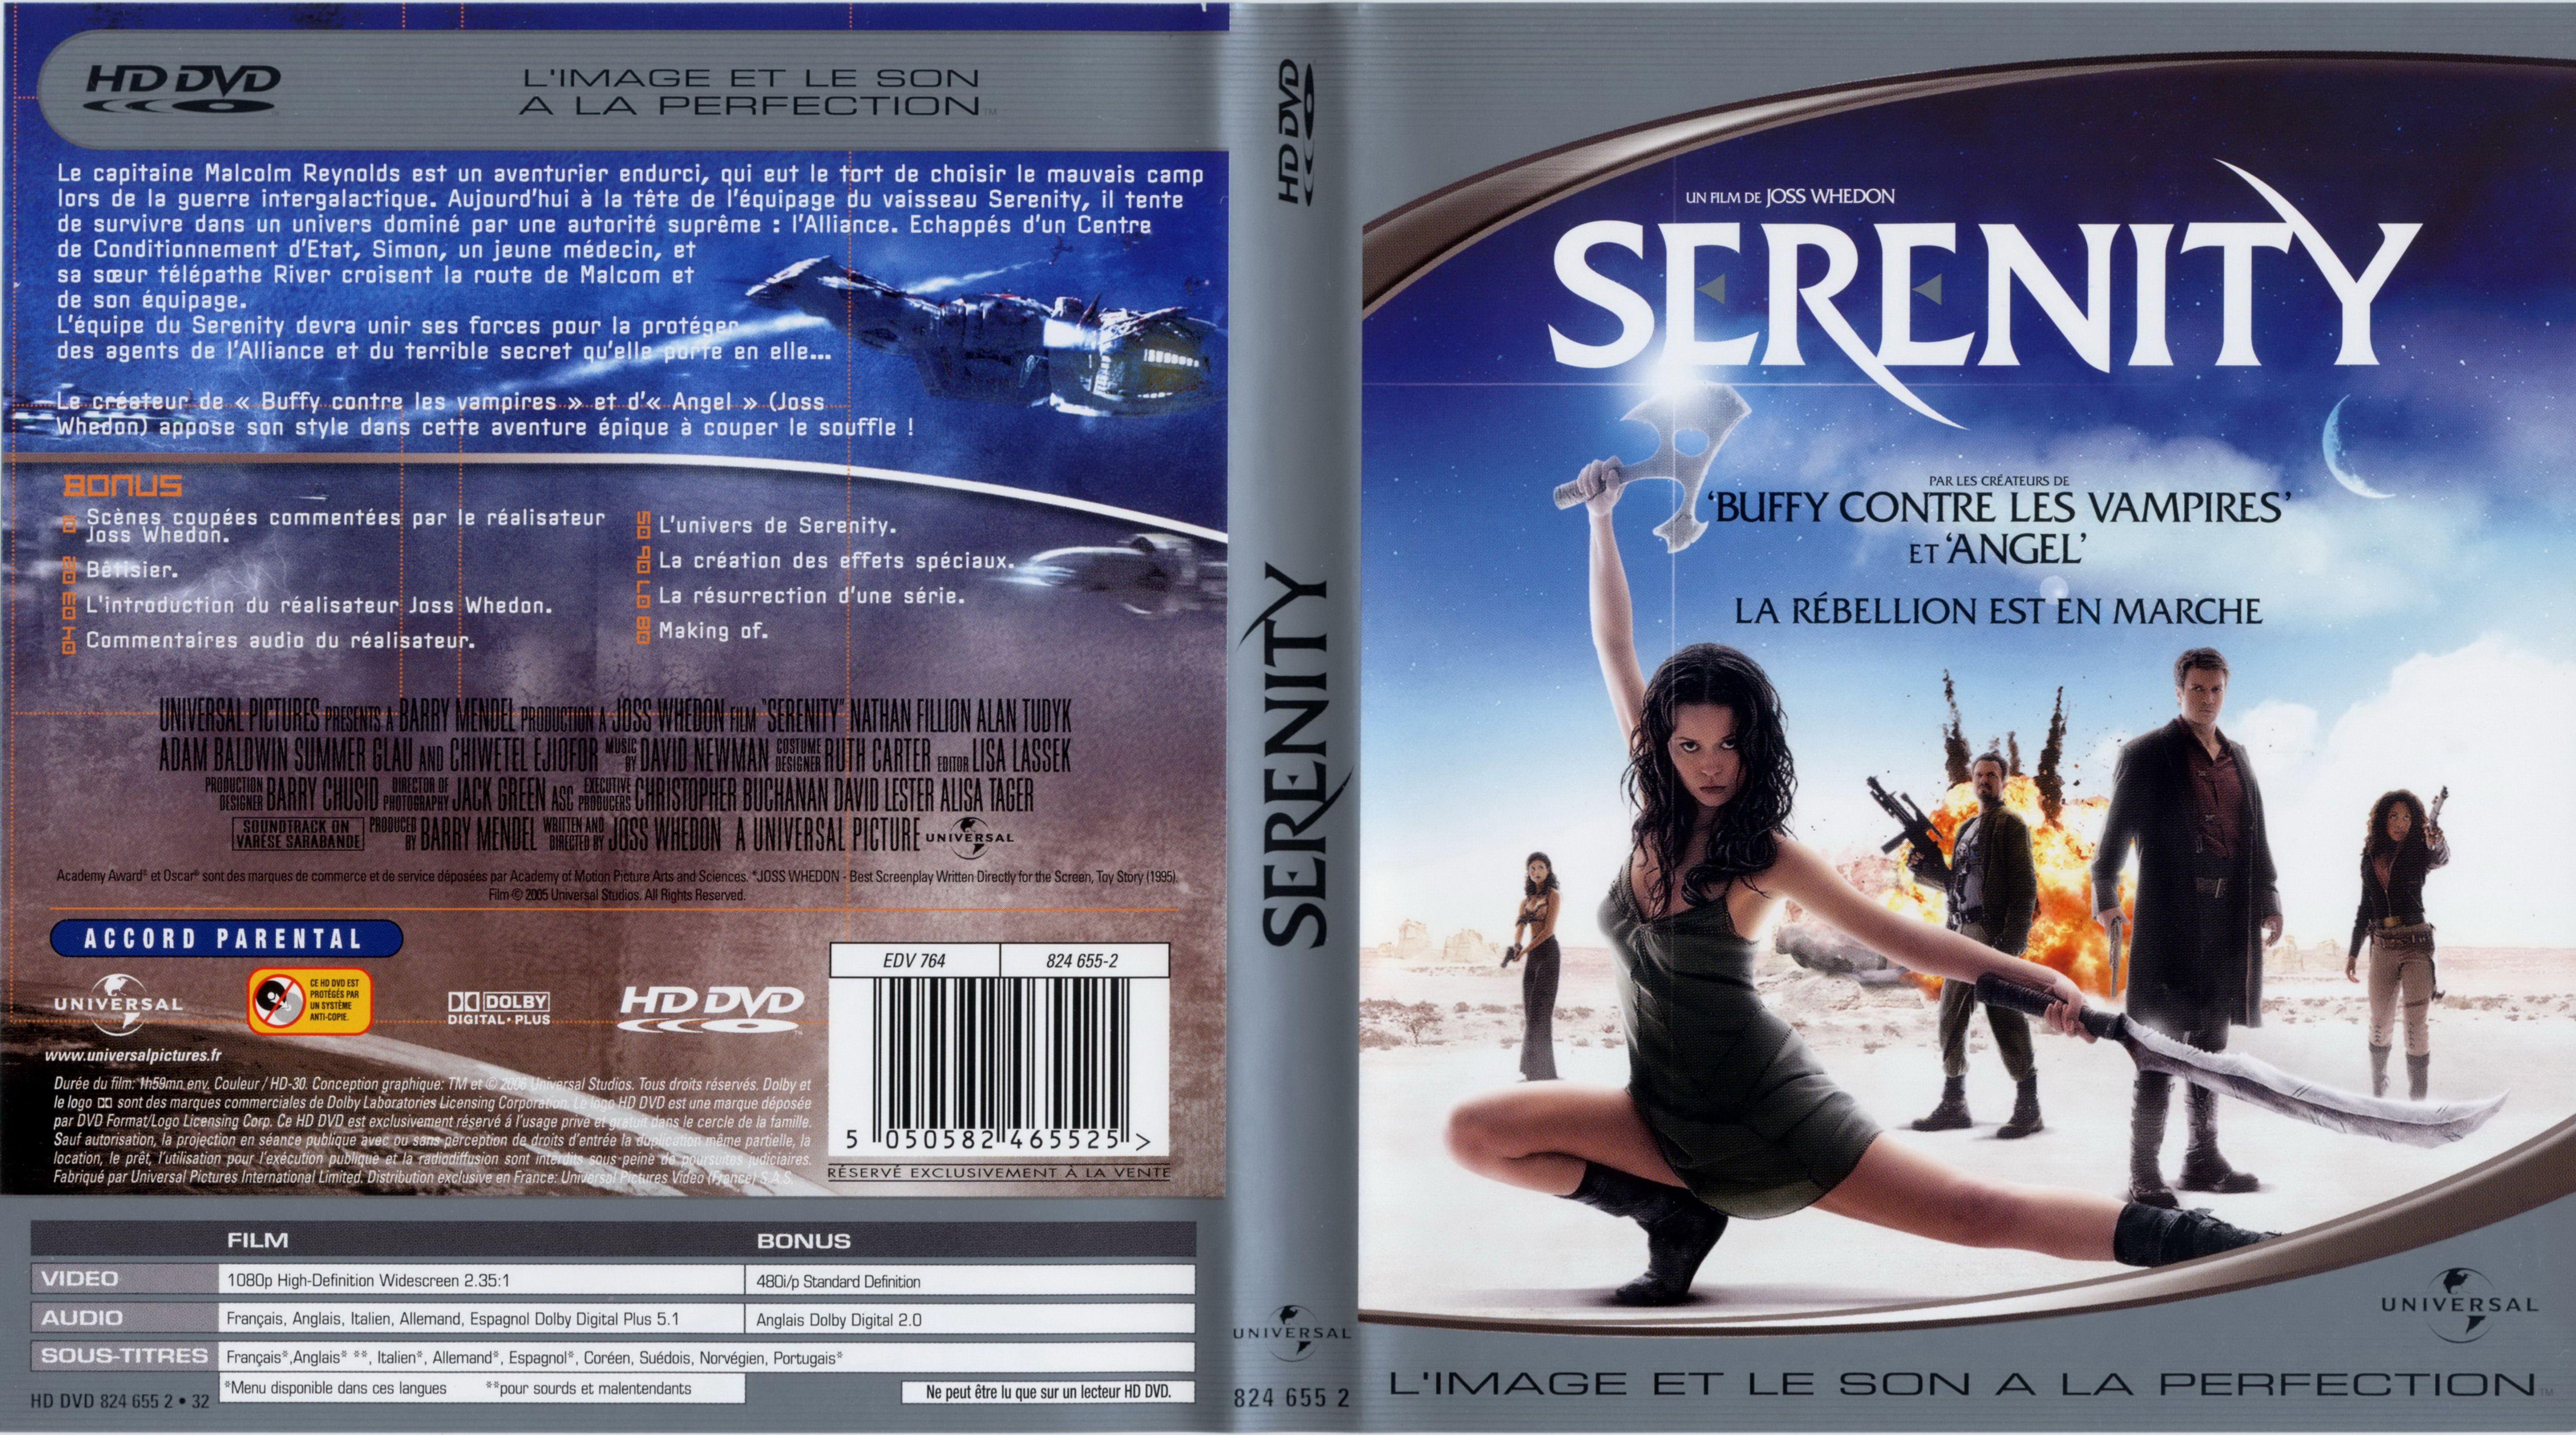 Jaquette DVD Serenity la rebellion est en marche (HD-DVD)